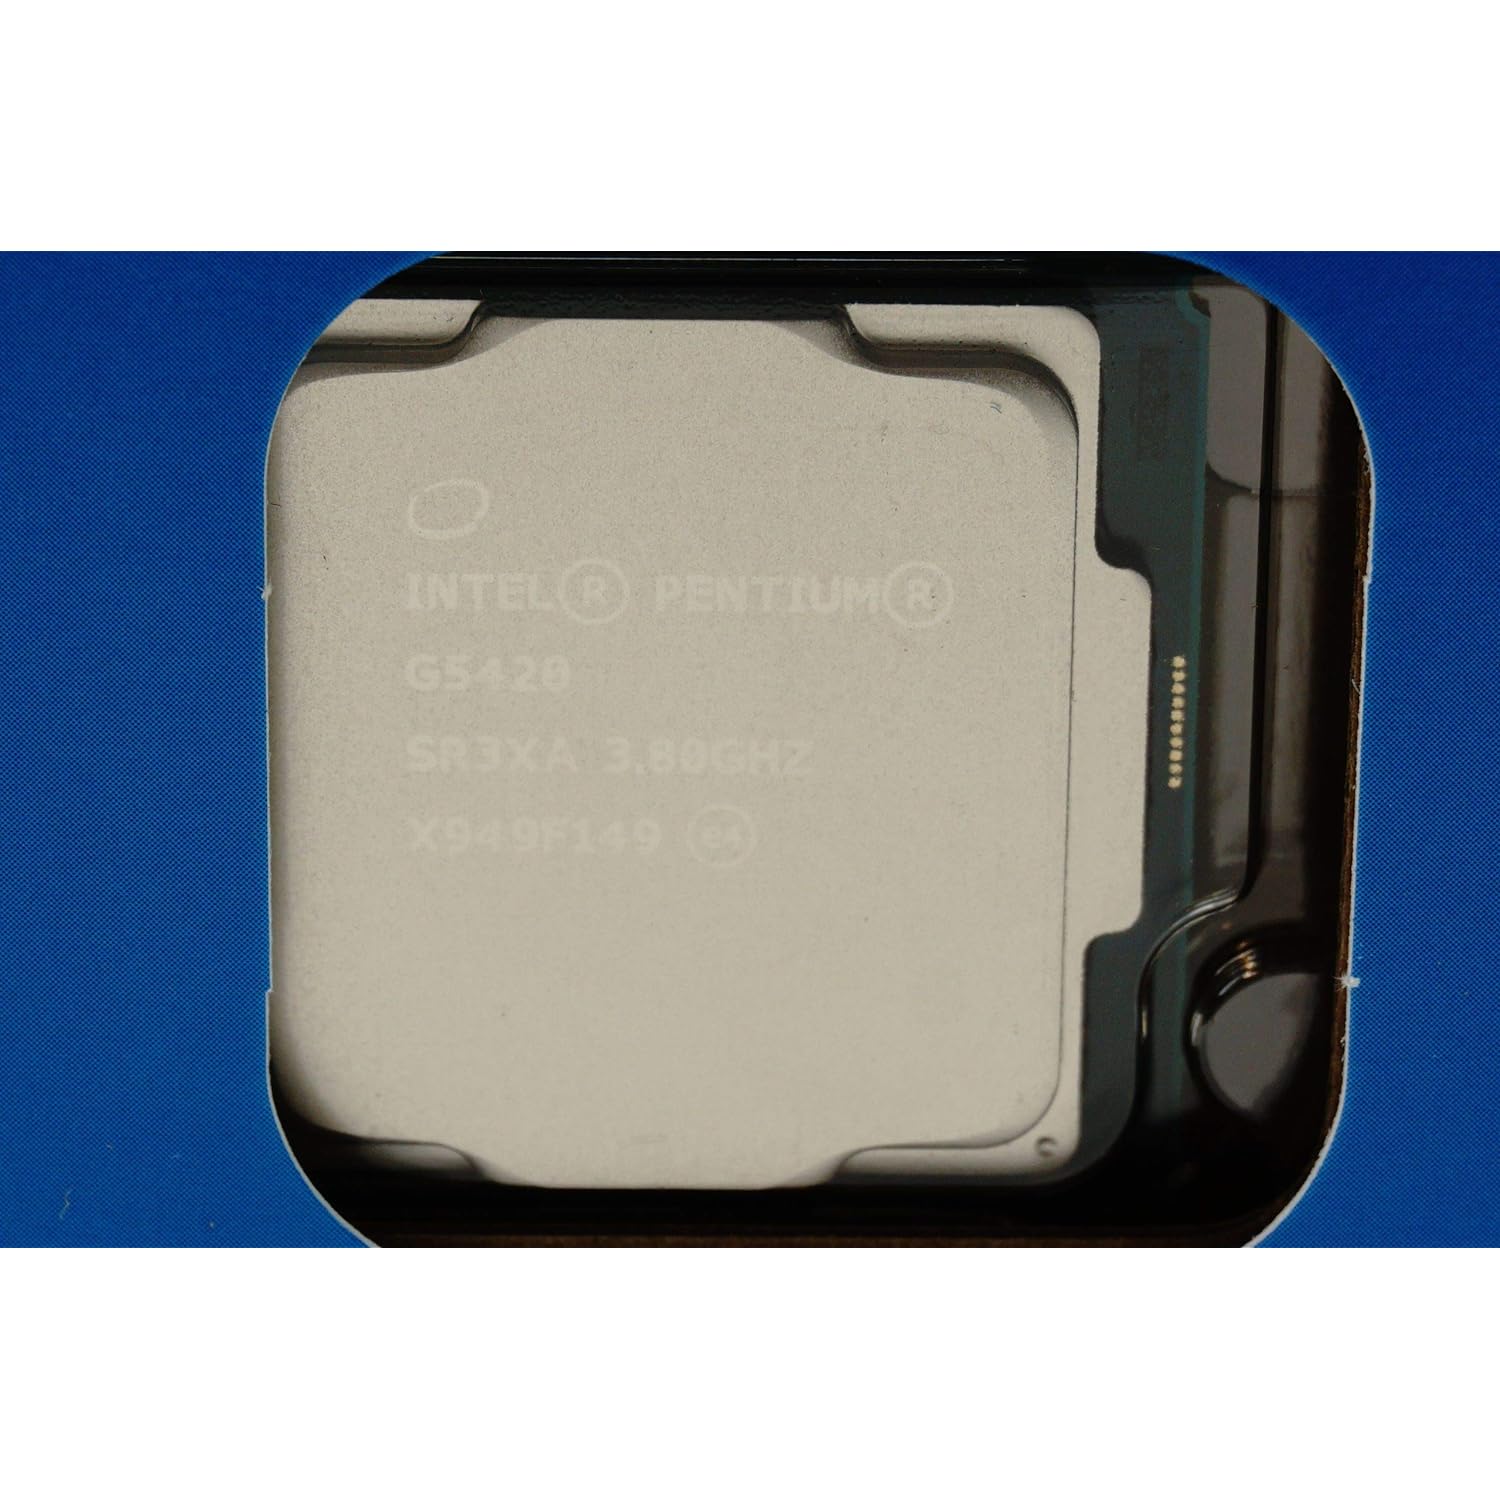 BX80684G5420 Intel Pentium Gold G5420 Desktop Processor 2 Core 3.8 GHz